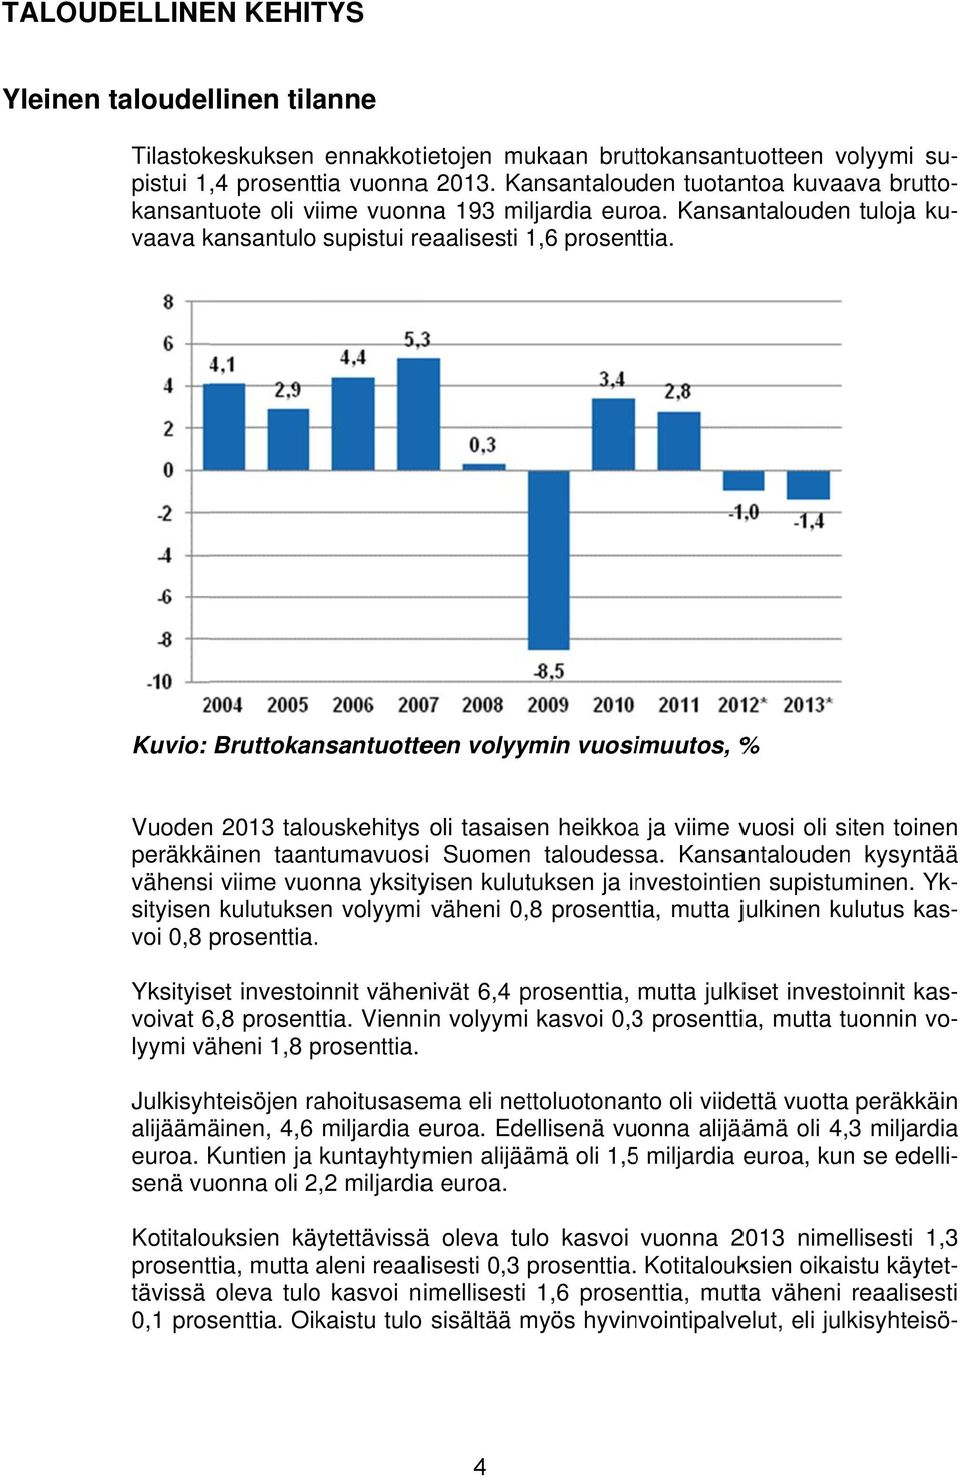 Kuvio: Bruttokansantuotteen volyymin vuosimuutos, % Vuoden 2013 talouskehitys oli tasaisen heikkoaa ja viime vuosi oli siten toinenn peräkkäinen taantumavuosi Suomen taloudessa.